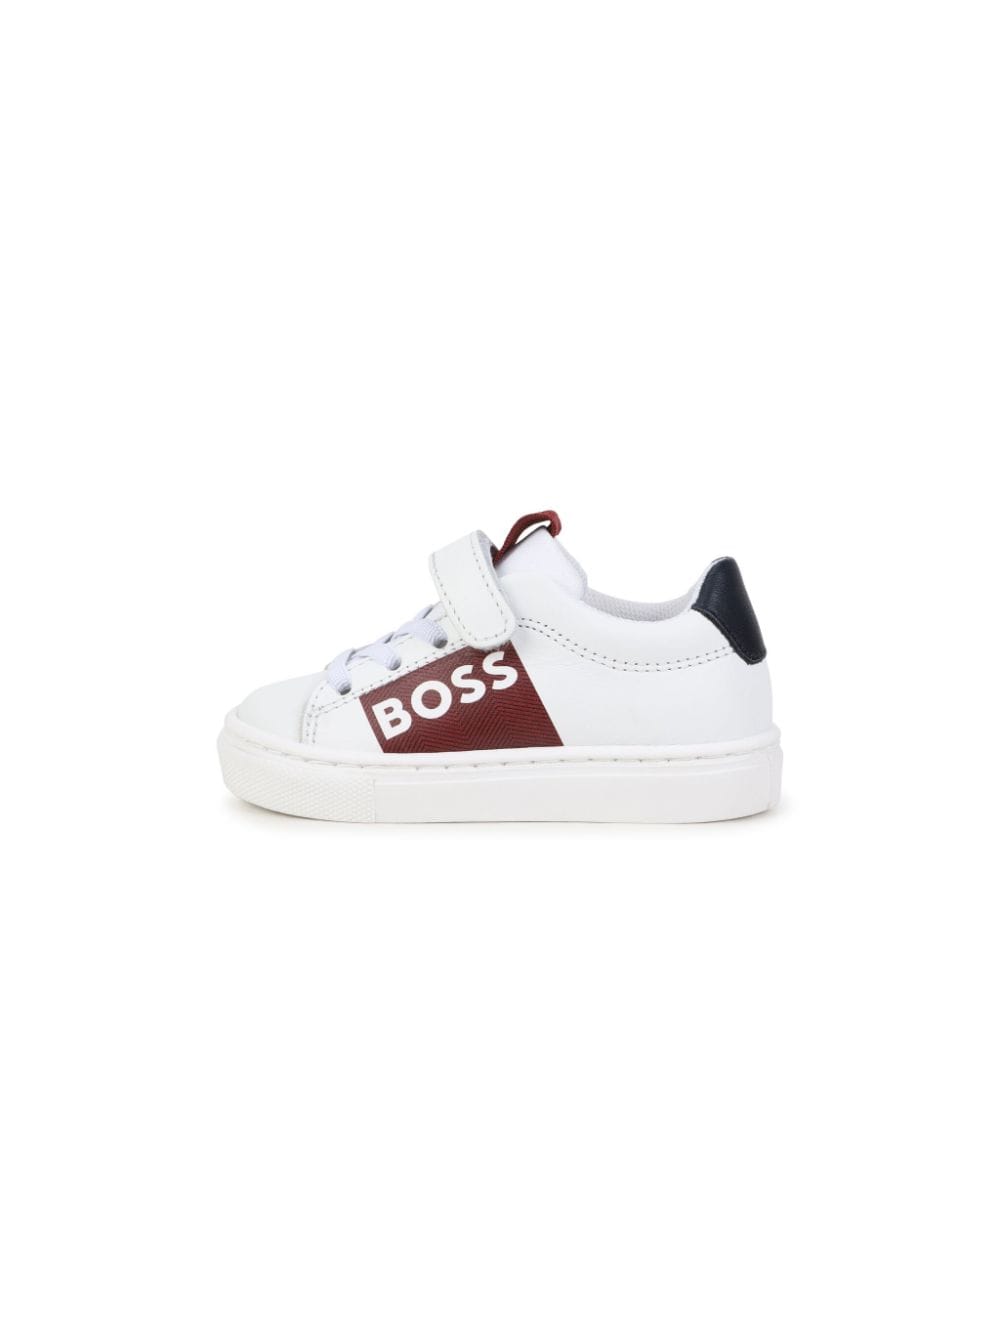 Boss Kids sneakers